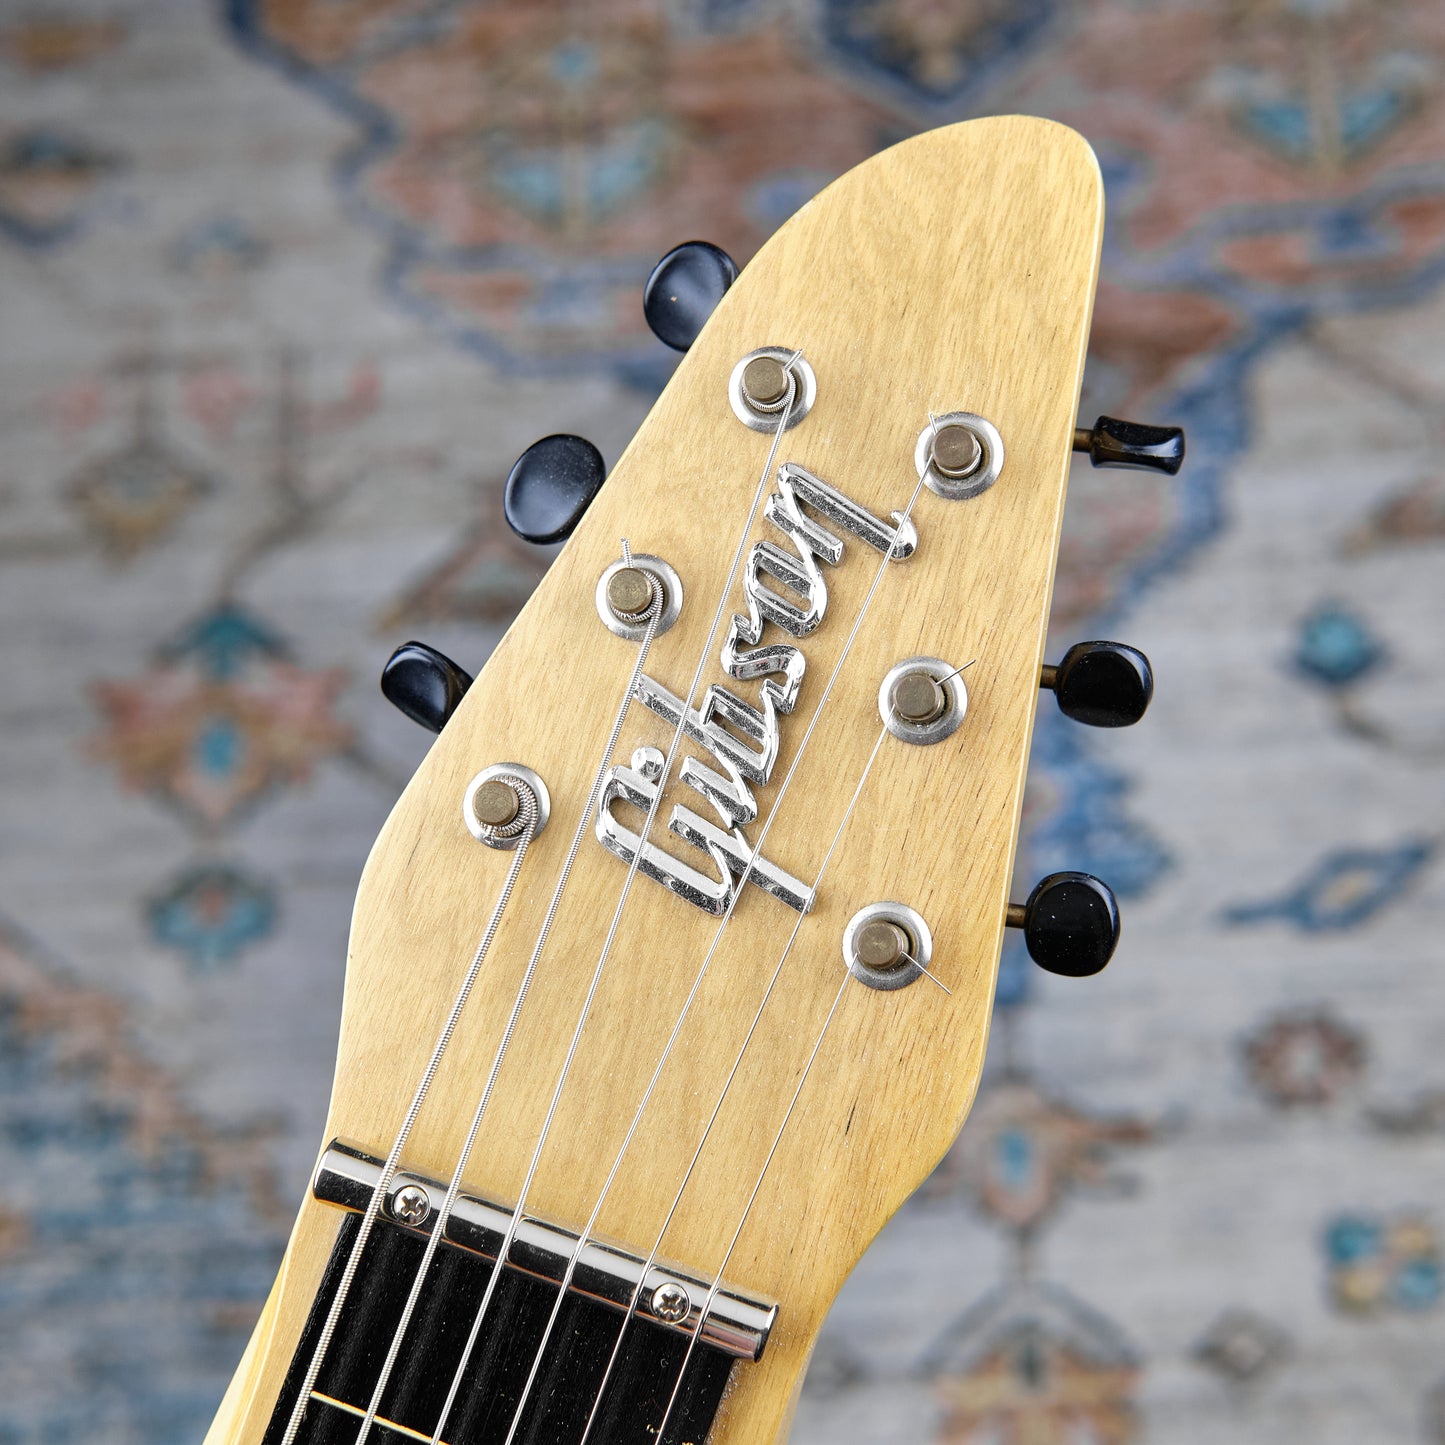 c1964-65 Gibson Skylark Lapsteel